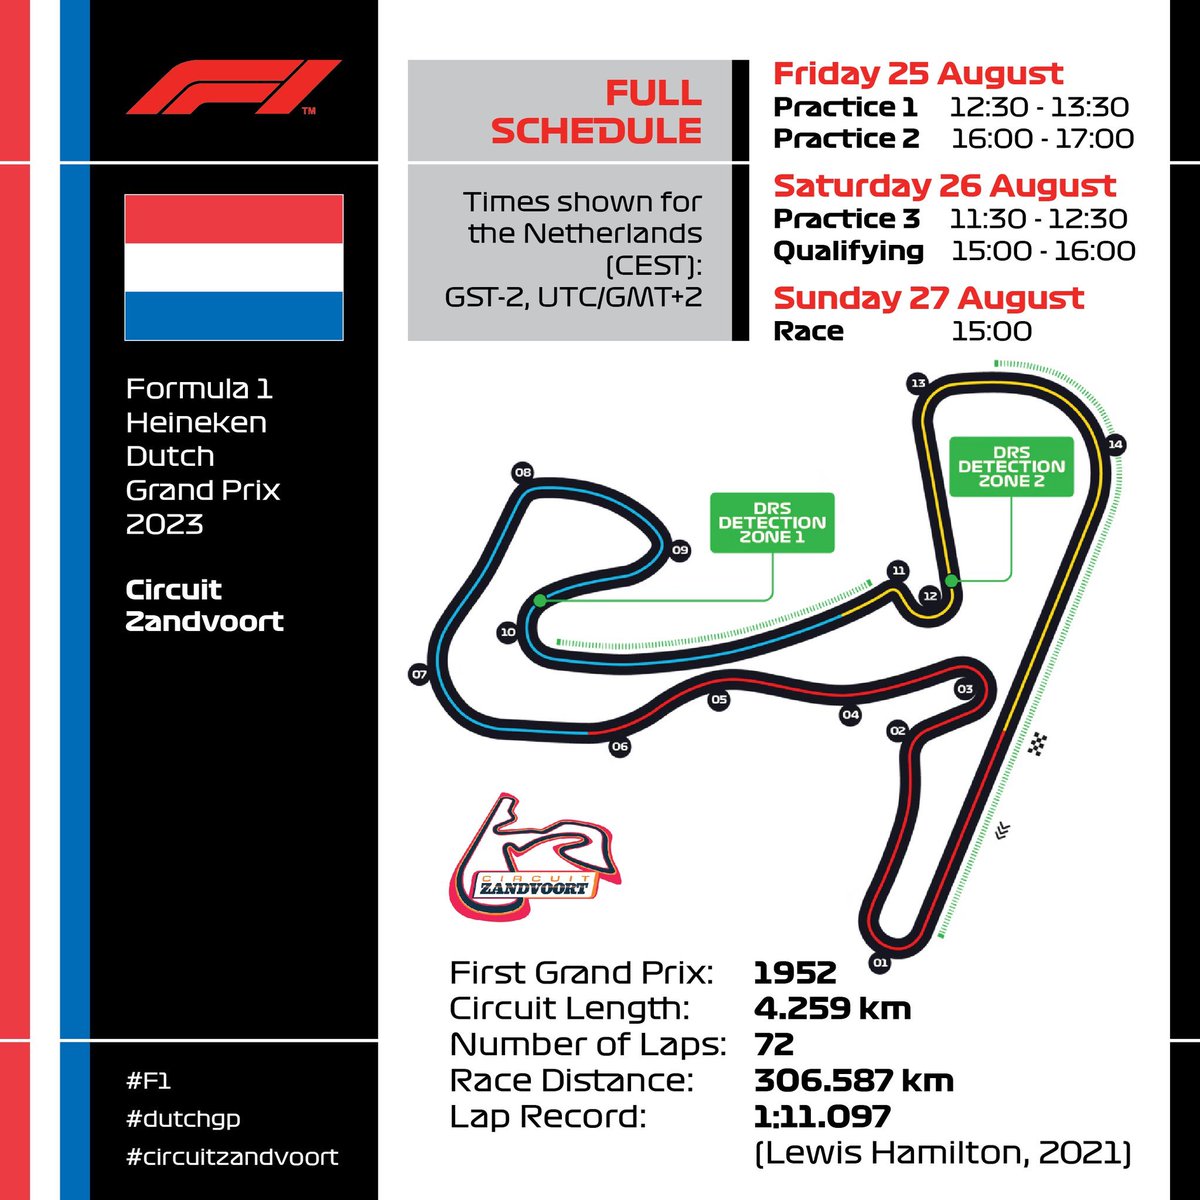 #Zandvoort #F1 #DutchGP #circuitZandvoort #WilliamsRacing